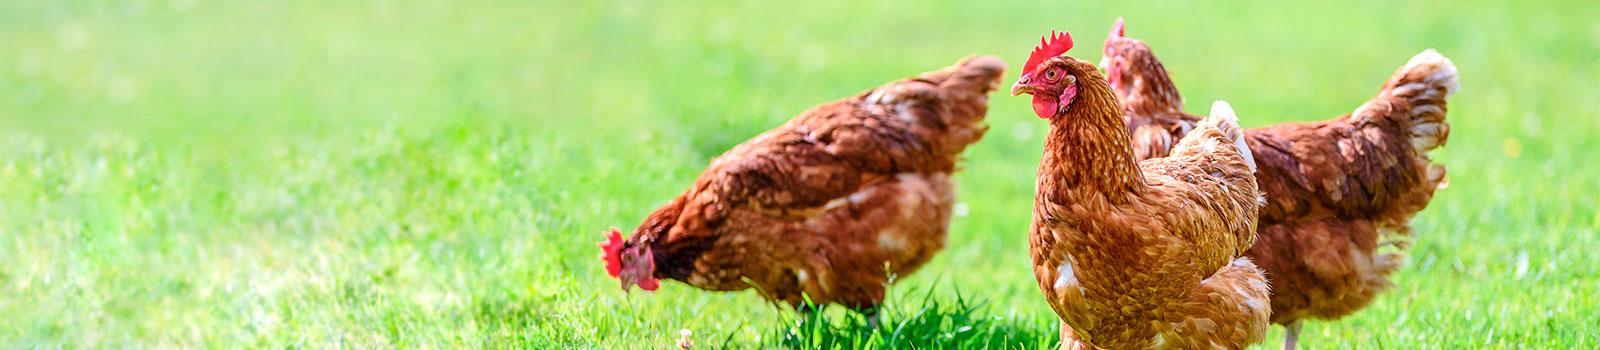 Poultry Farm Lending 